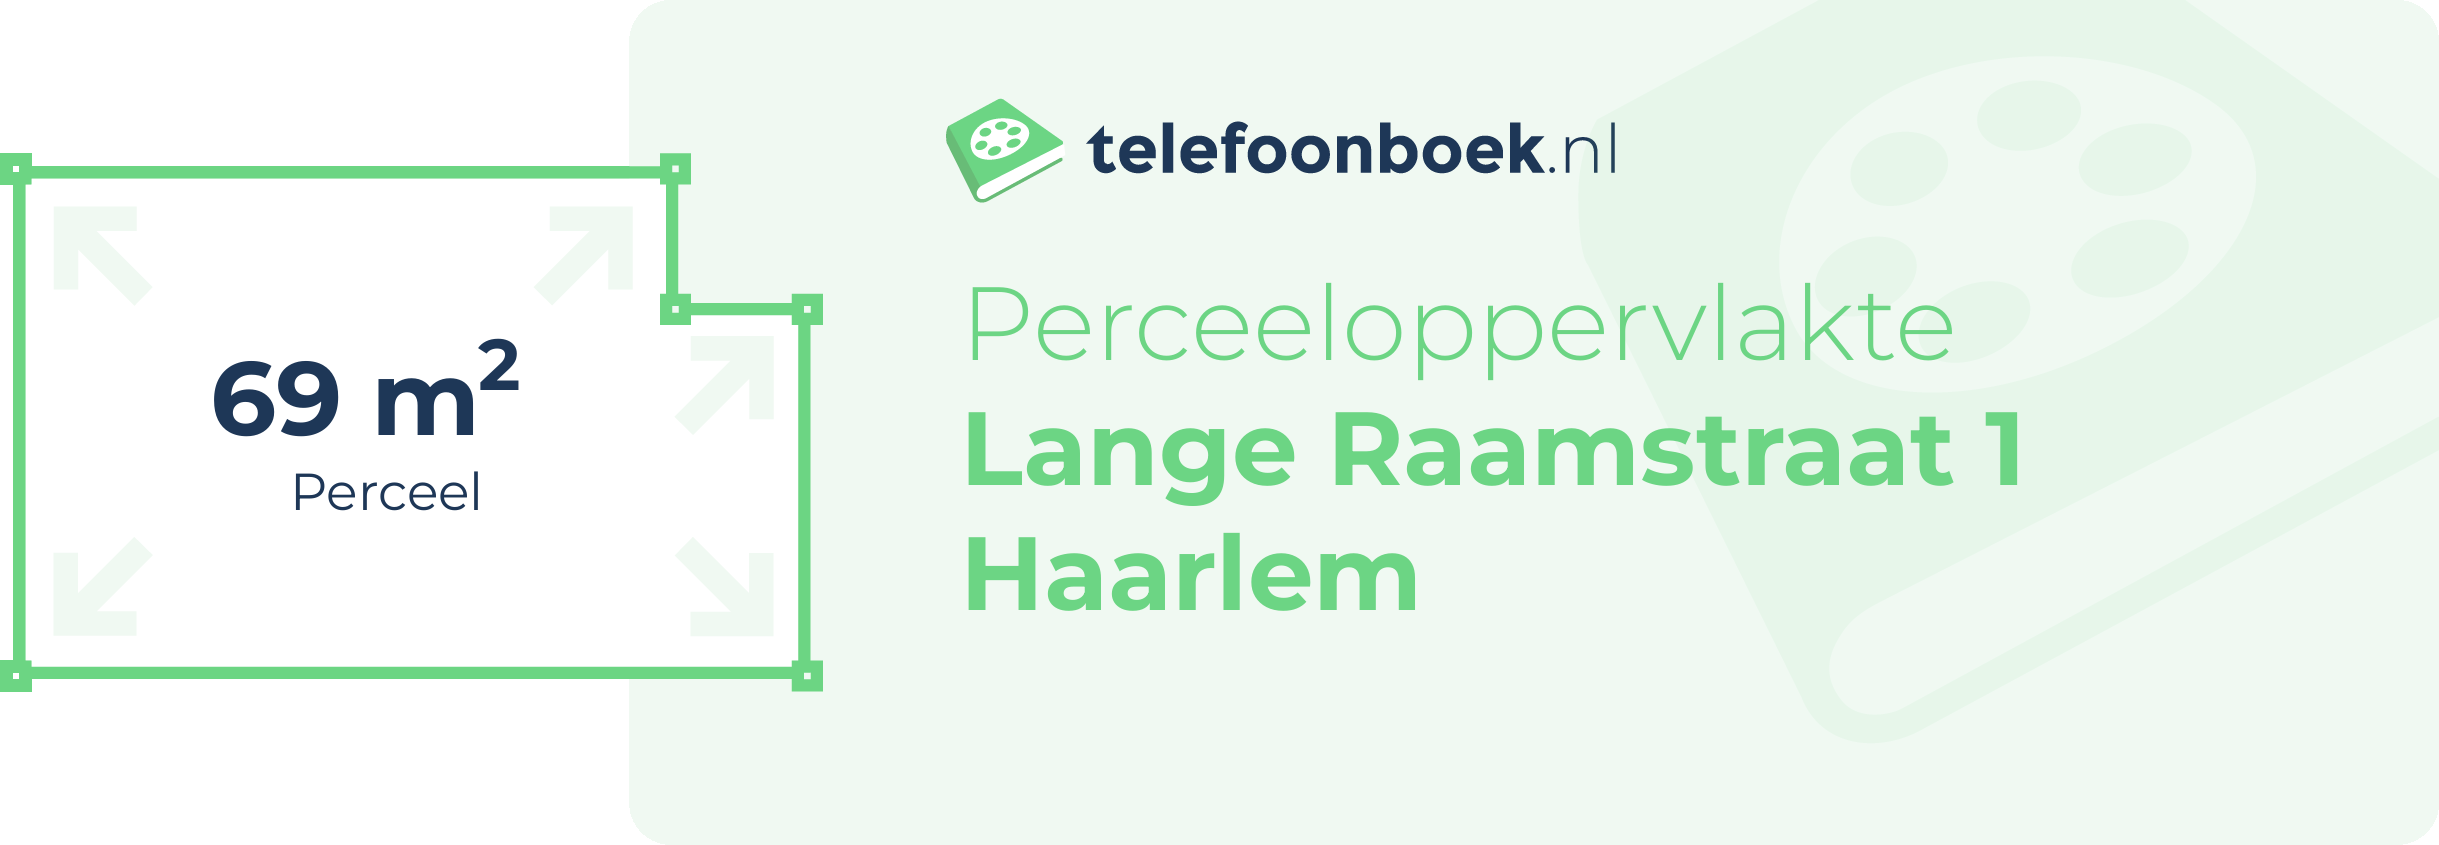 Perceeloppervlakte Lange Raamstraat 1 Haarlem